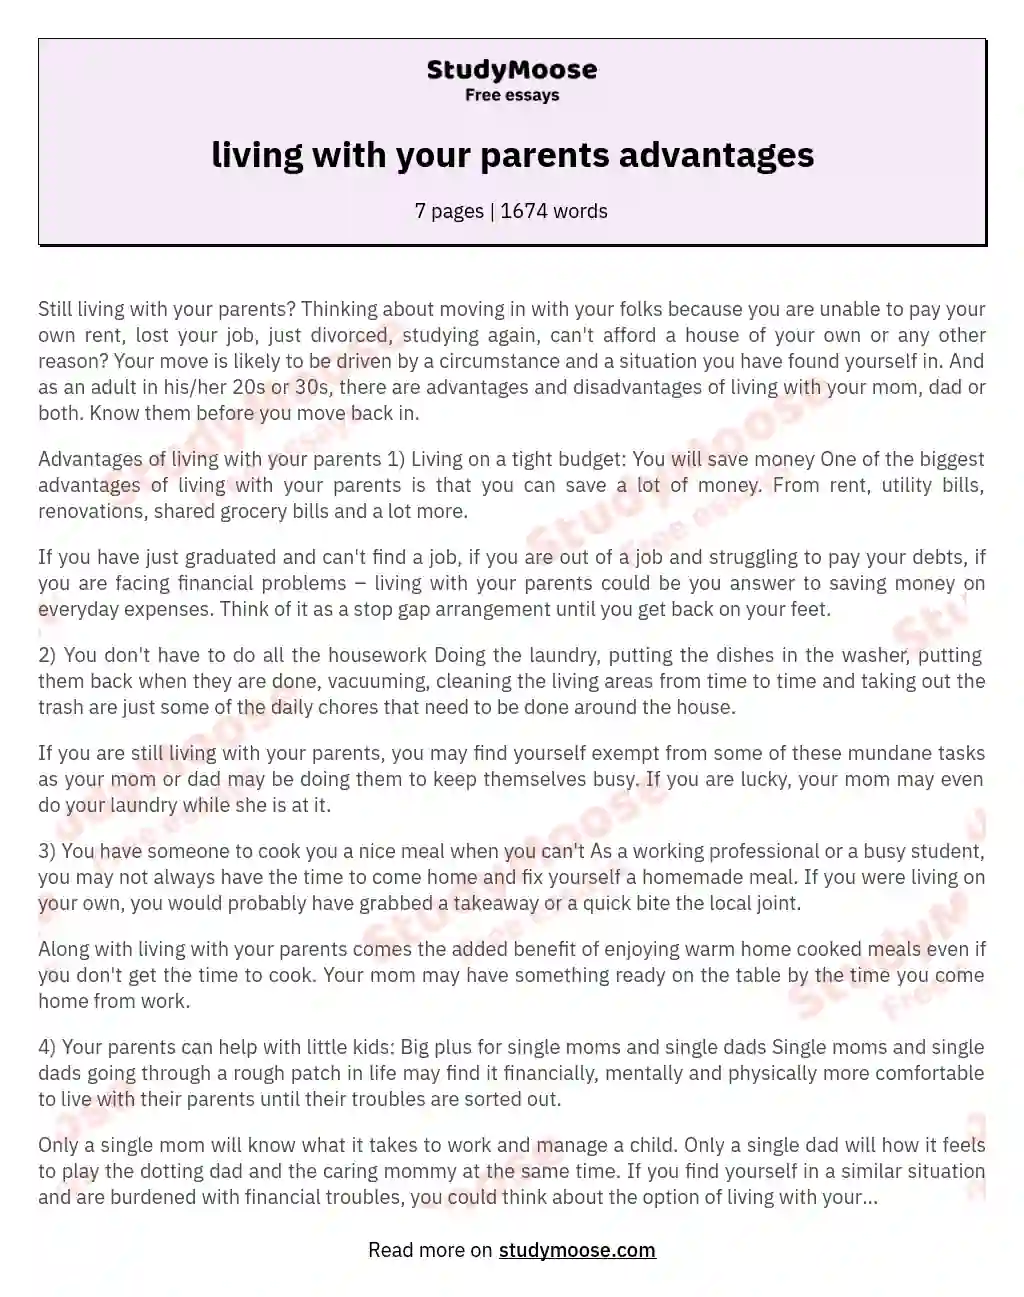 living with your parents advantages